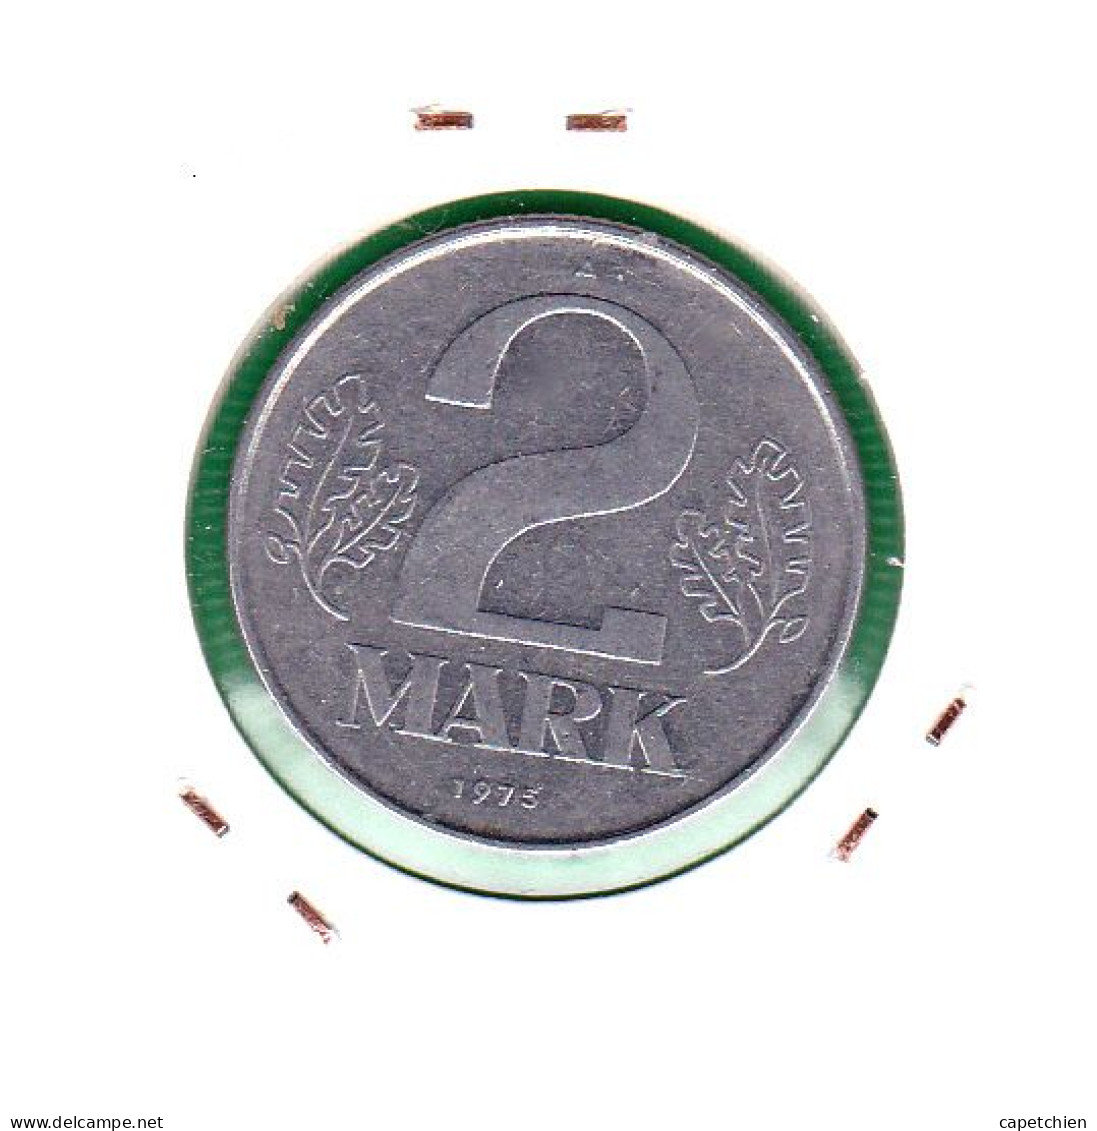 R.D.A. / 2 MARK / 1975 - 2 Mark